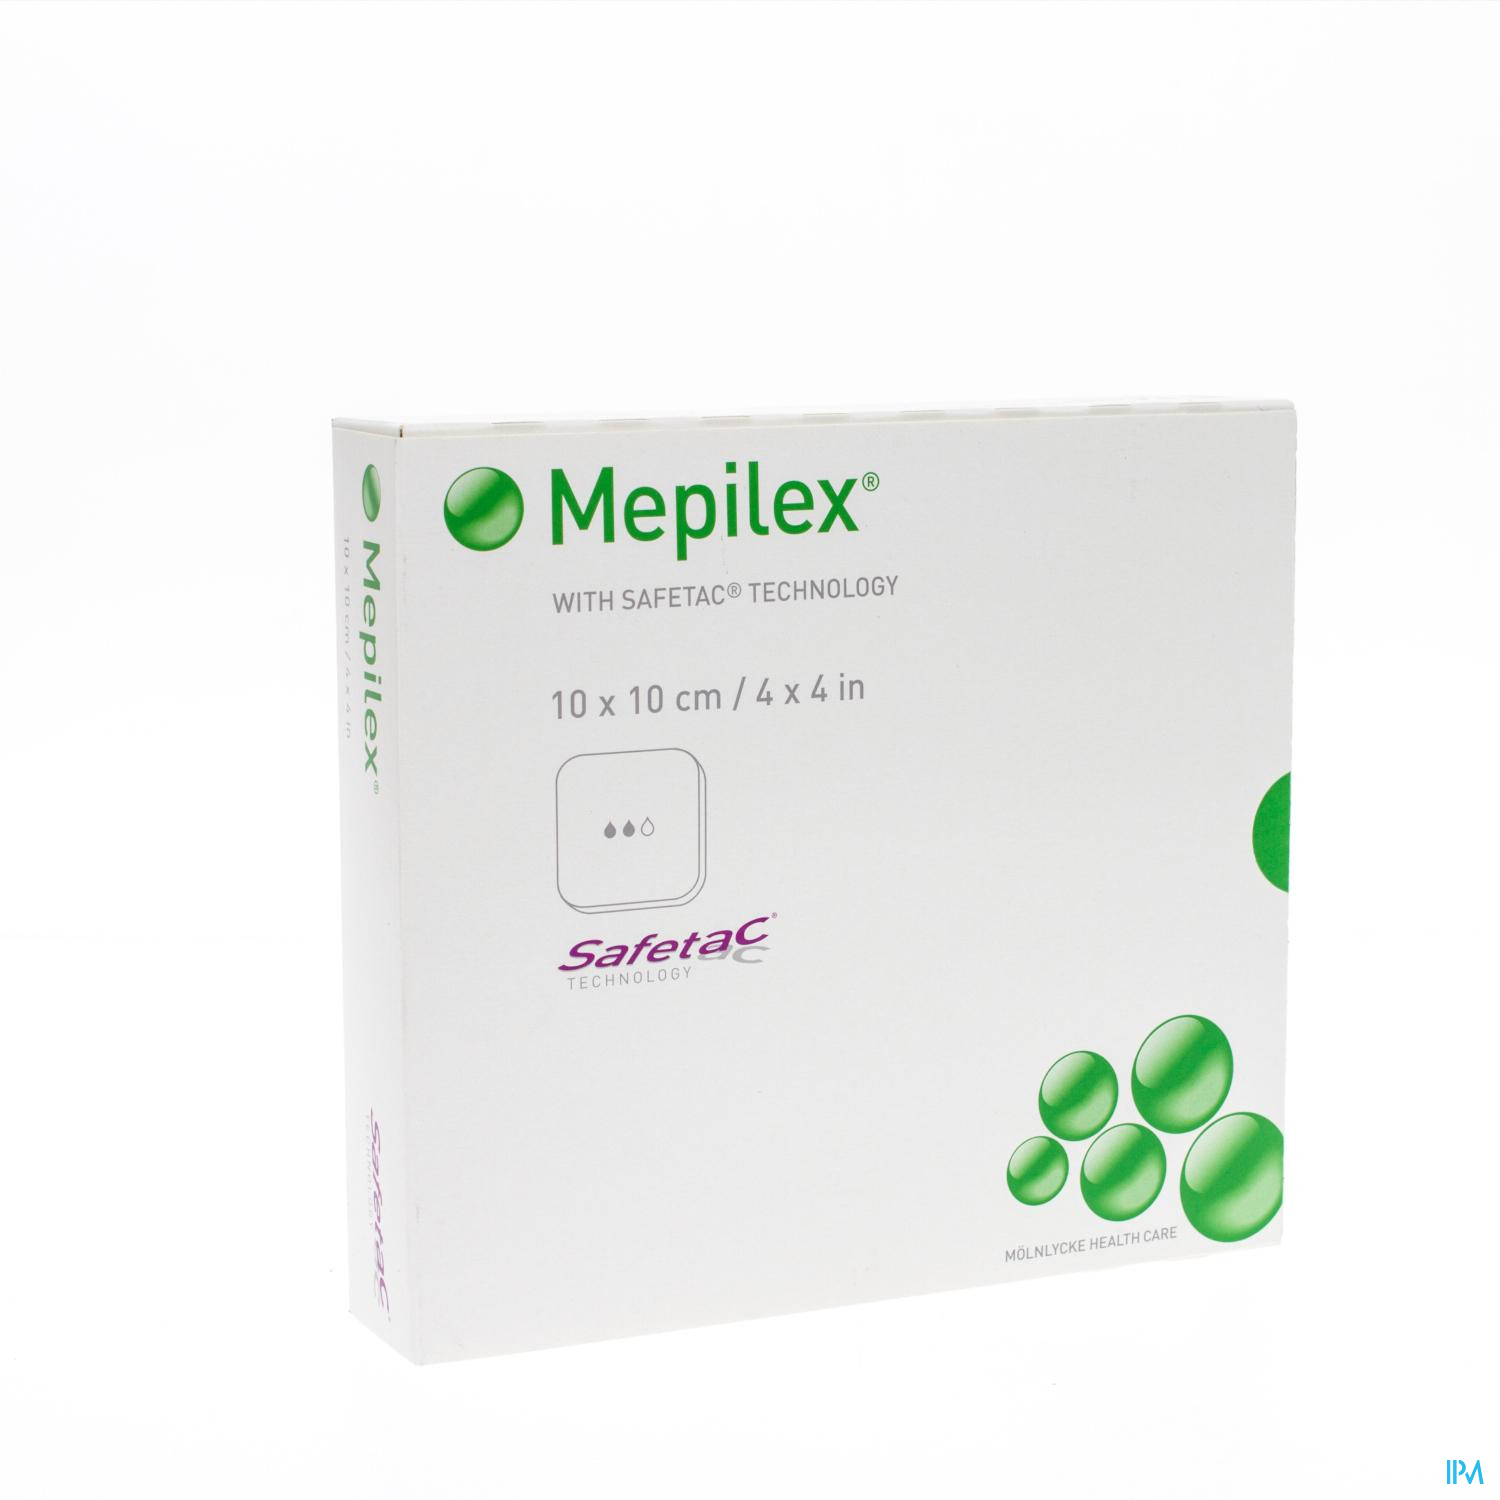 Mepilex Schuimverb Sil Abs Ster 10x10cm 5 294100